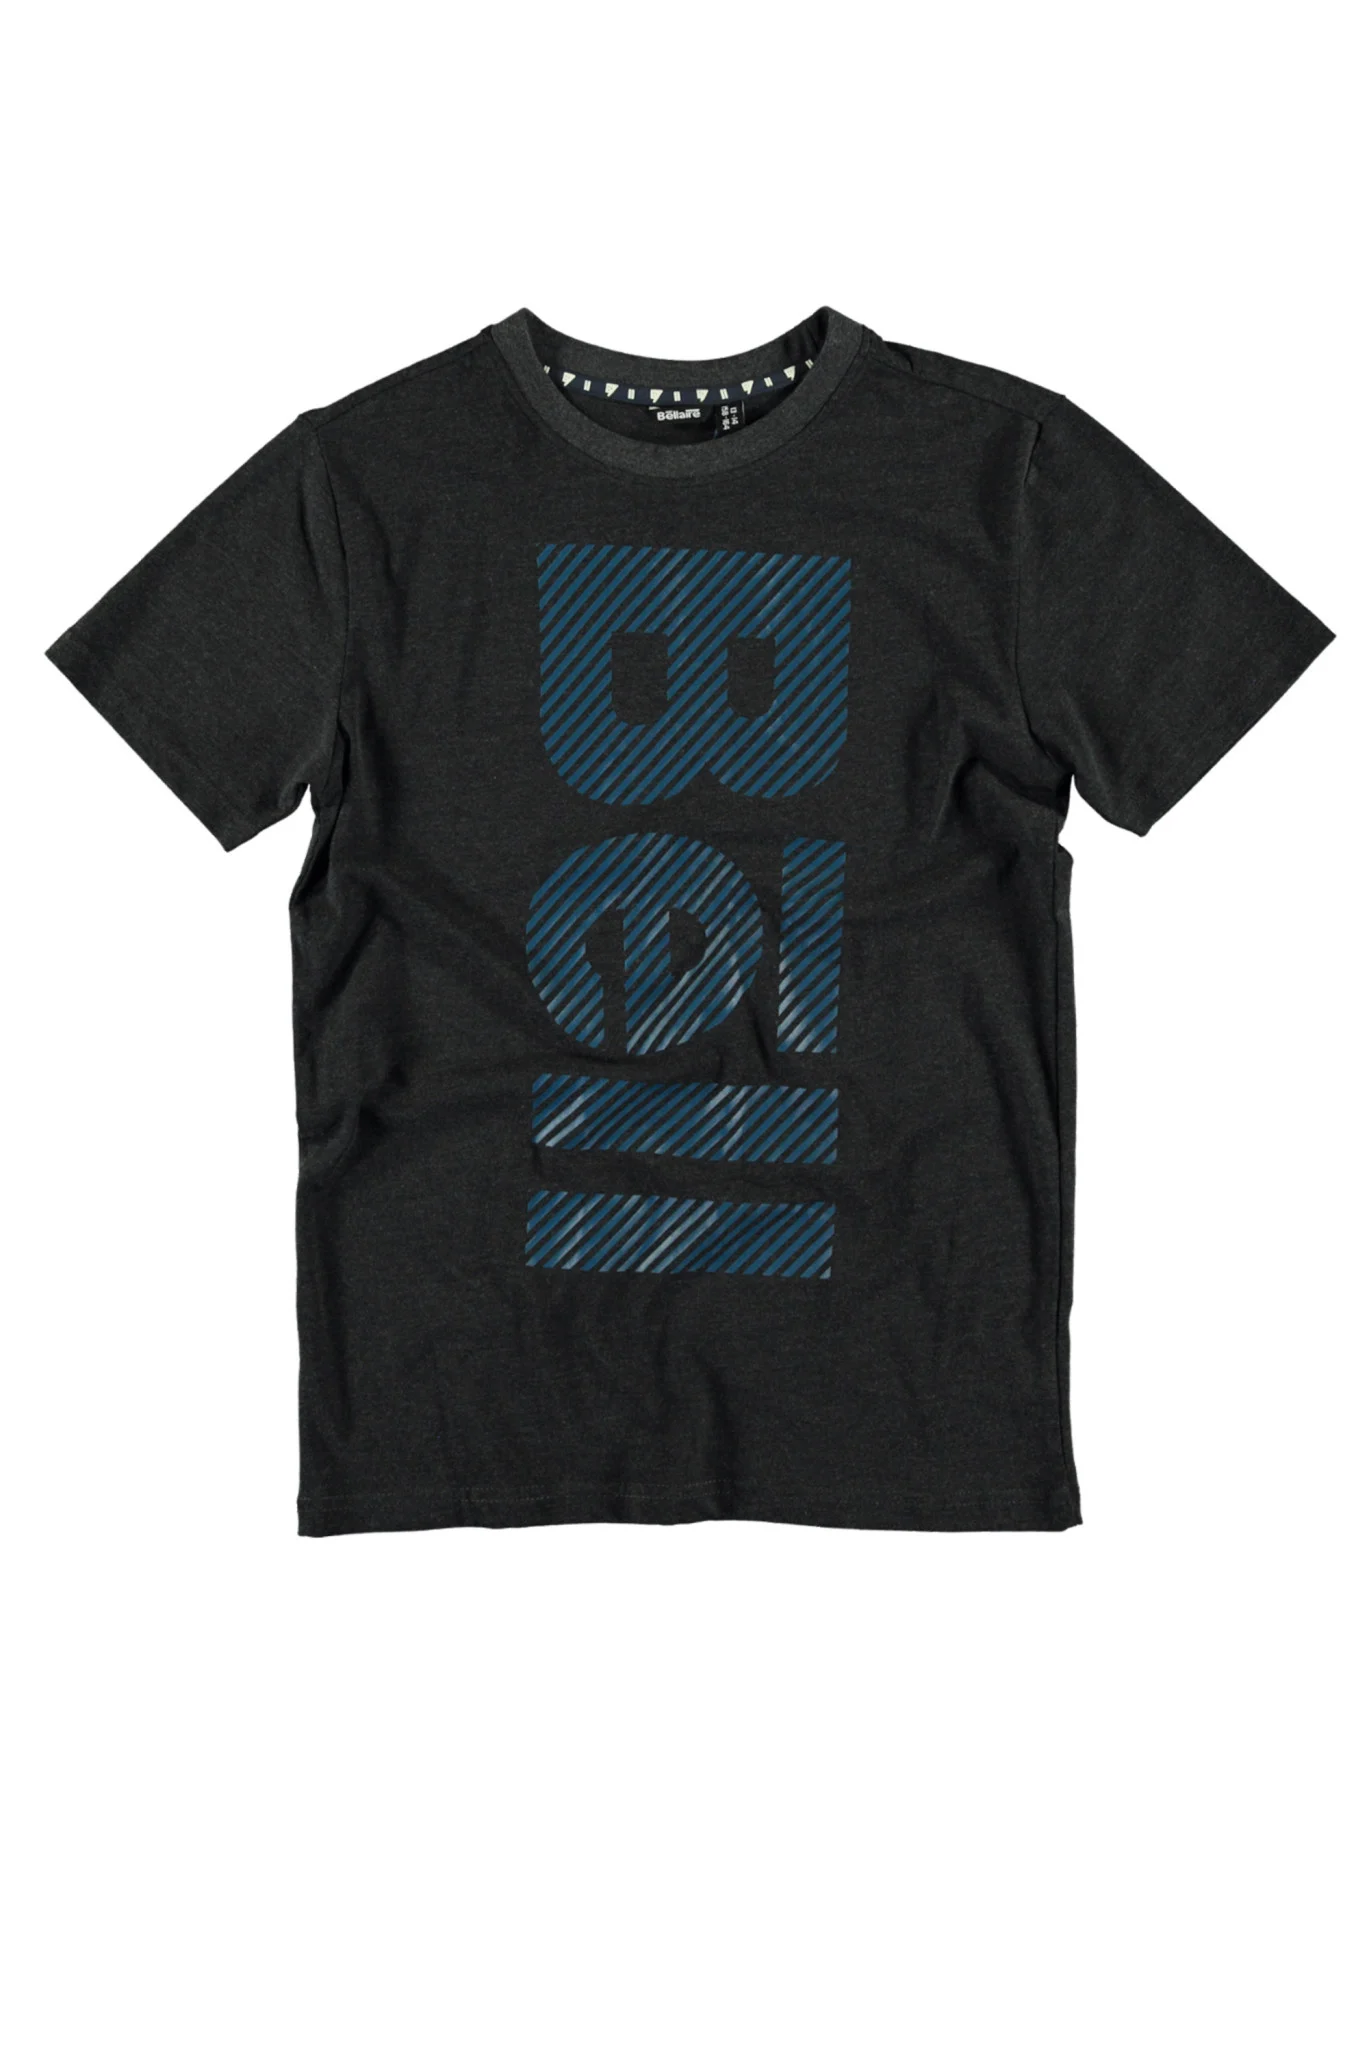 Afbeelding van Bellaire Jongens t-shirt met groot logo sage